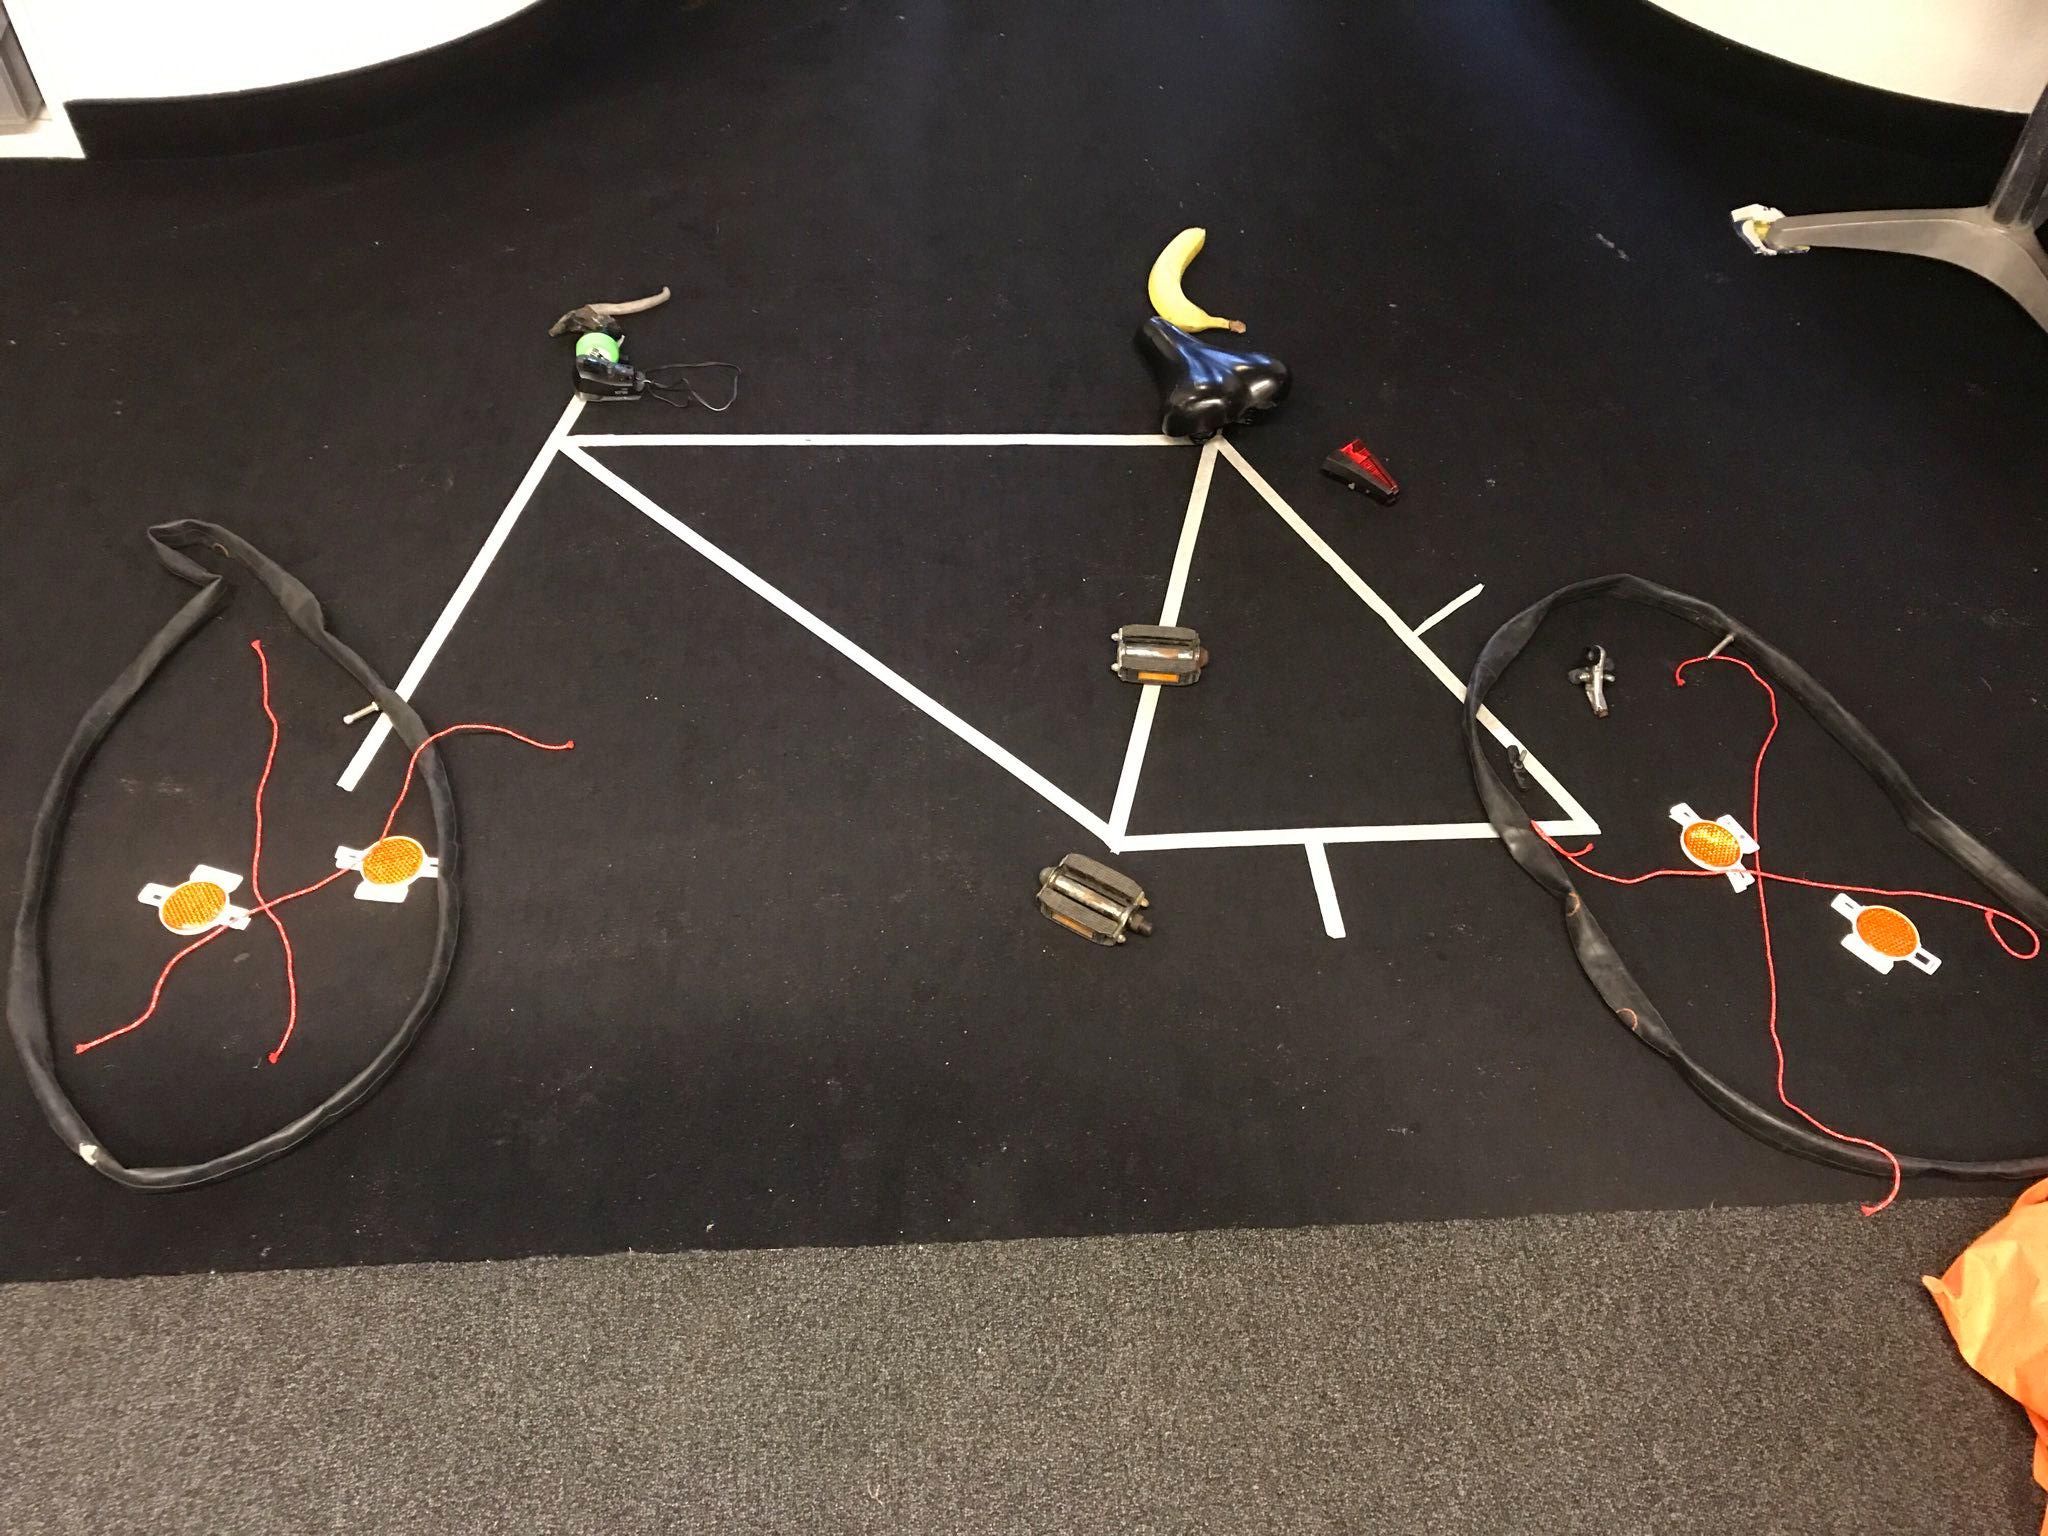 Auf einem schwarzen Untergrund ist mit weißen Klebeband der Rahmen eines Fahrrads aufgeklebt. Die restlichen Teile des Fahrads wurden anders dargestellt: So sind die Speichen rote Fäden, die Pedale sind richtige Fahrradpedale, die Reifen leere Schläuche usw. 